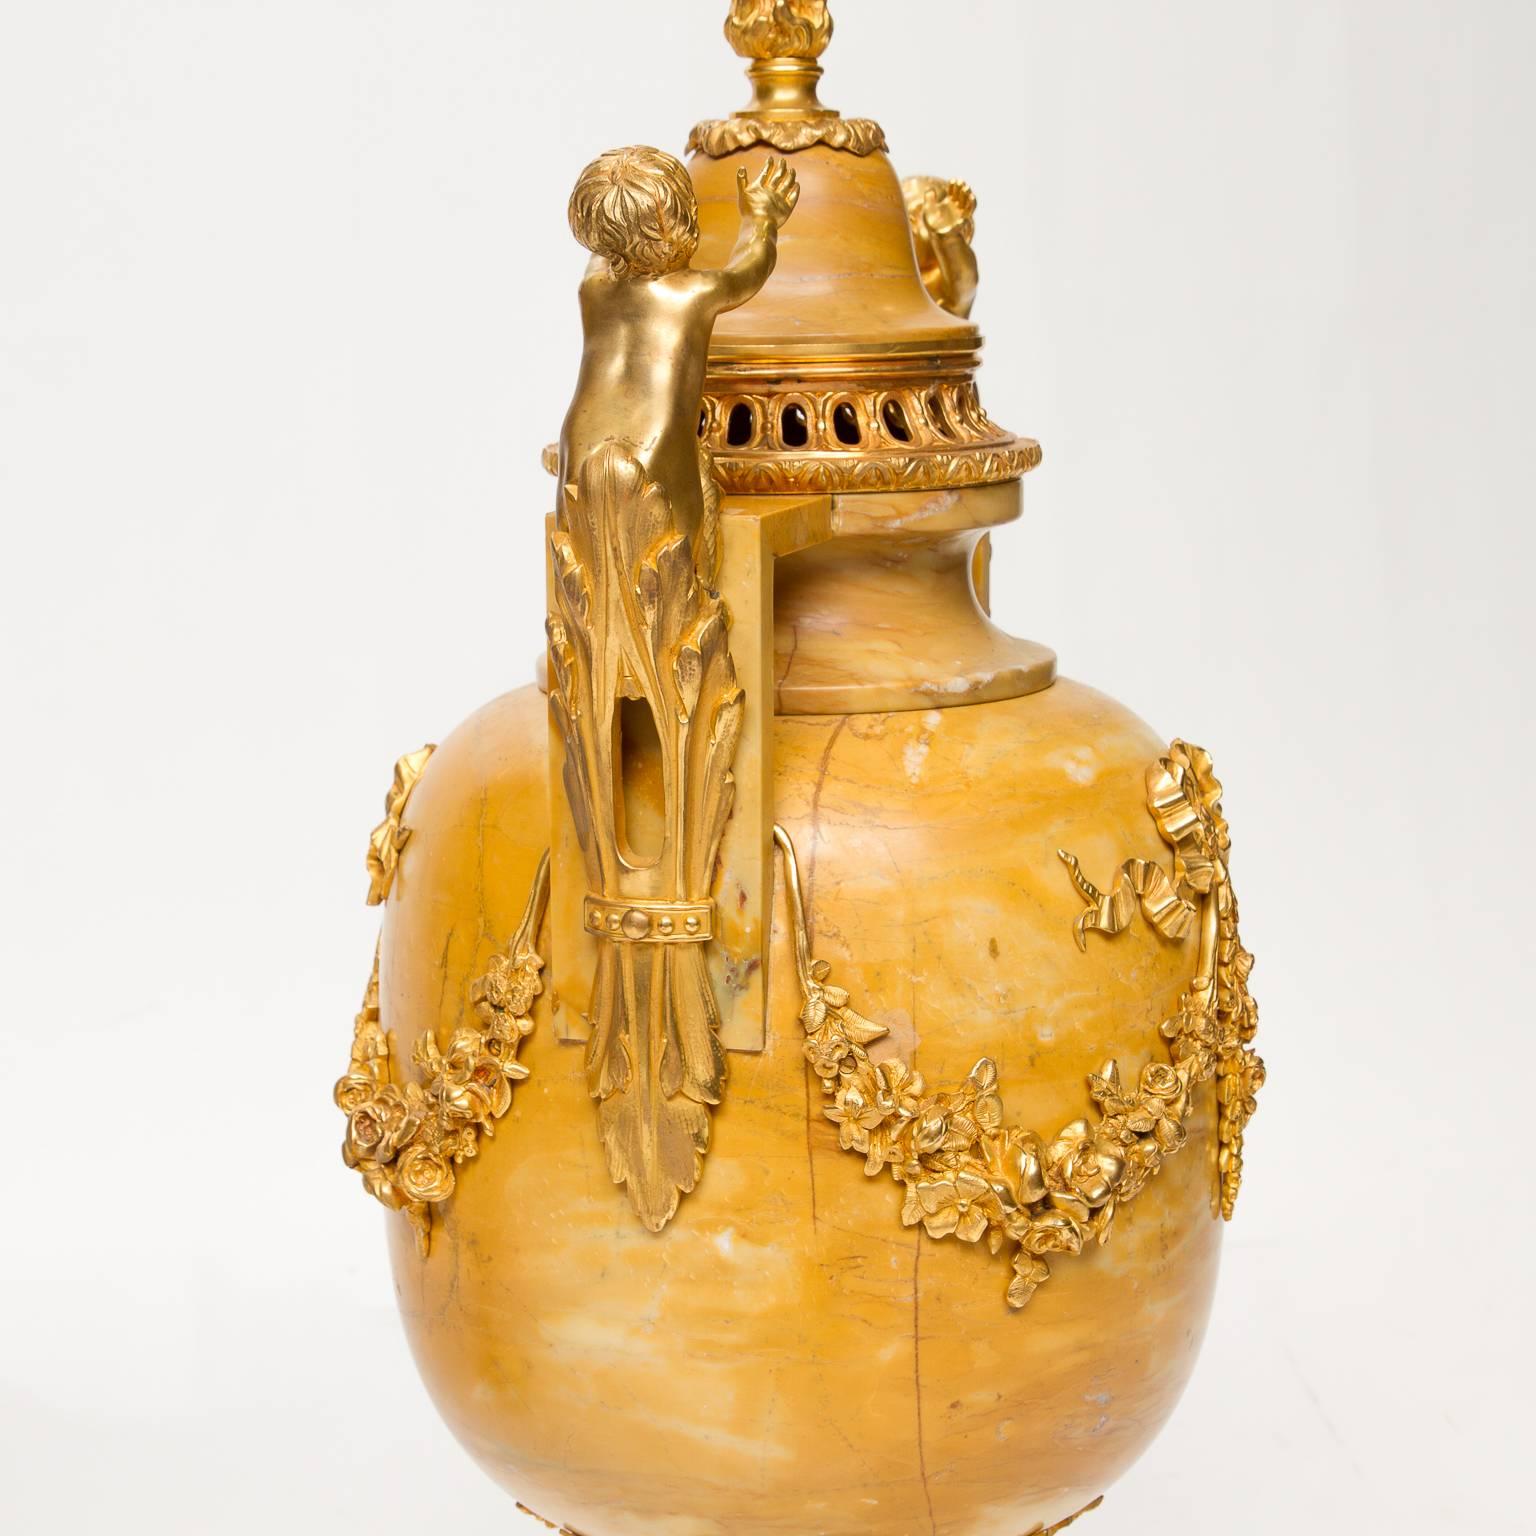 Une grande paire d'urnes en marbre (Hauteville) de style Louis XVI avec des montures en bronze doré très ordinaires. Les montures (excellent état et couleur) supportaient des putti, des pointes de flamme sur les CAP, jusqu'aux guirlandes à l'avant